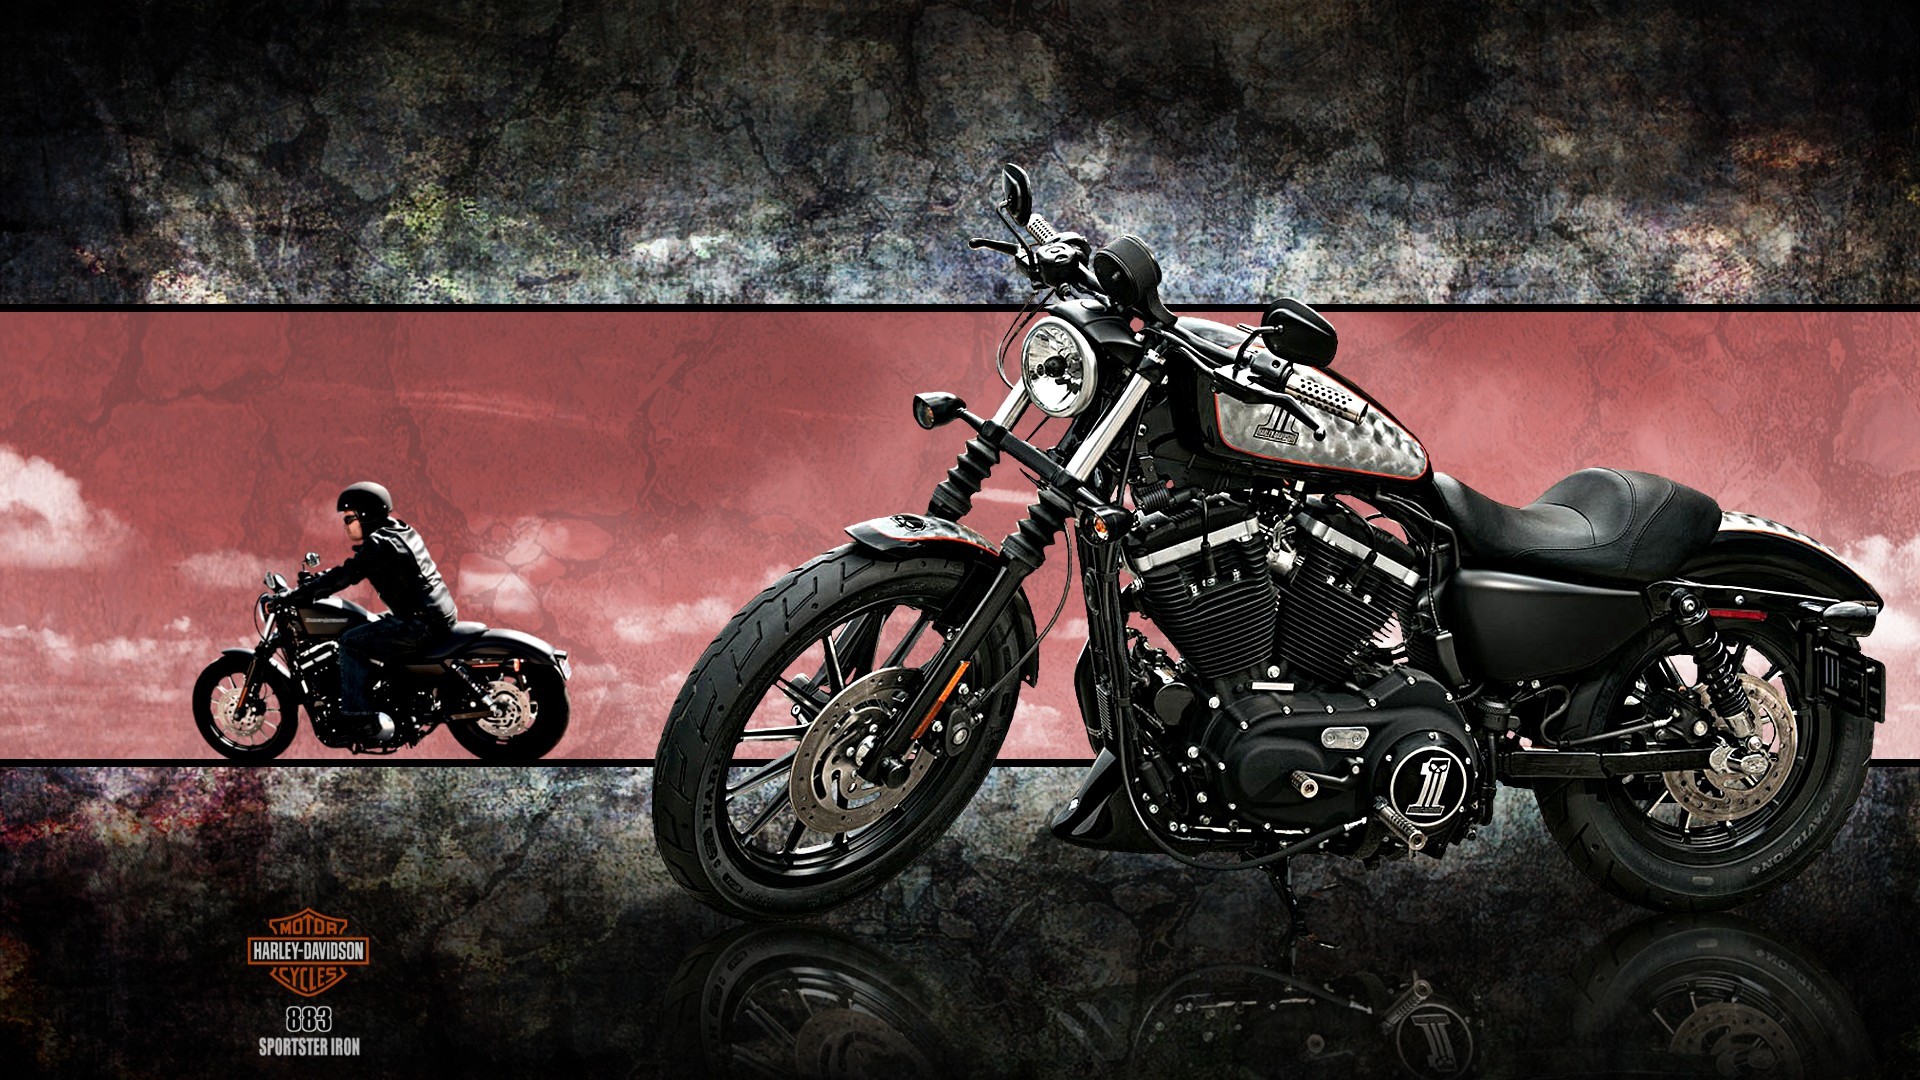 harley davidson iron 883 hd wallpaper,land vehicle,vehicle,motorcycle,motor vehicle,motorcycling